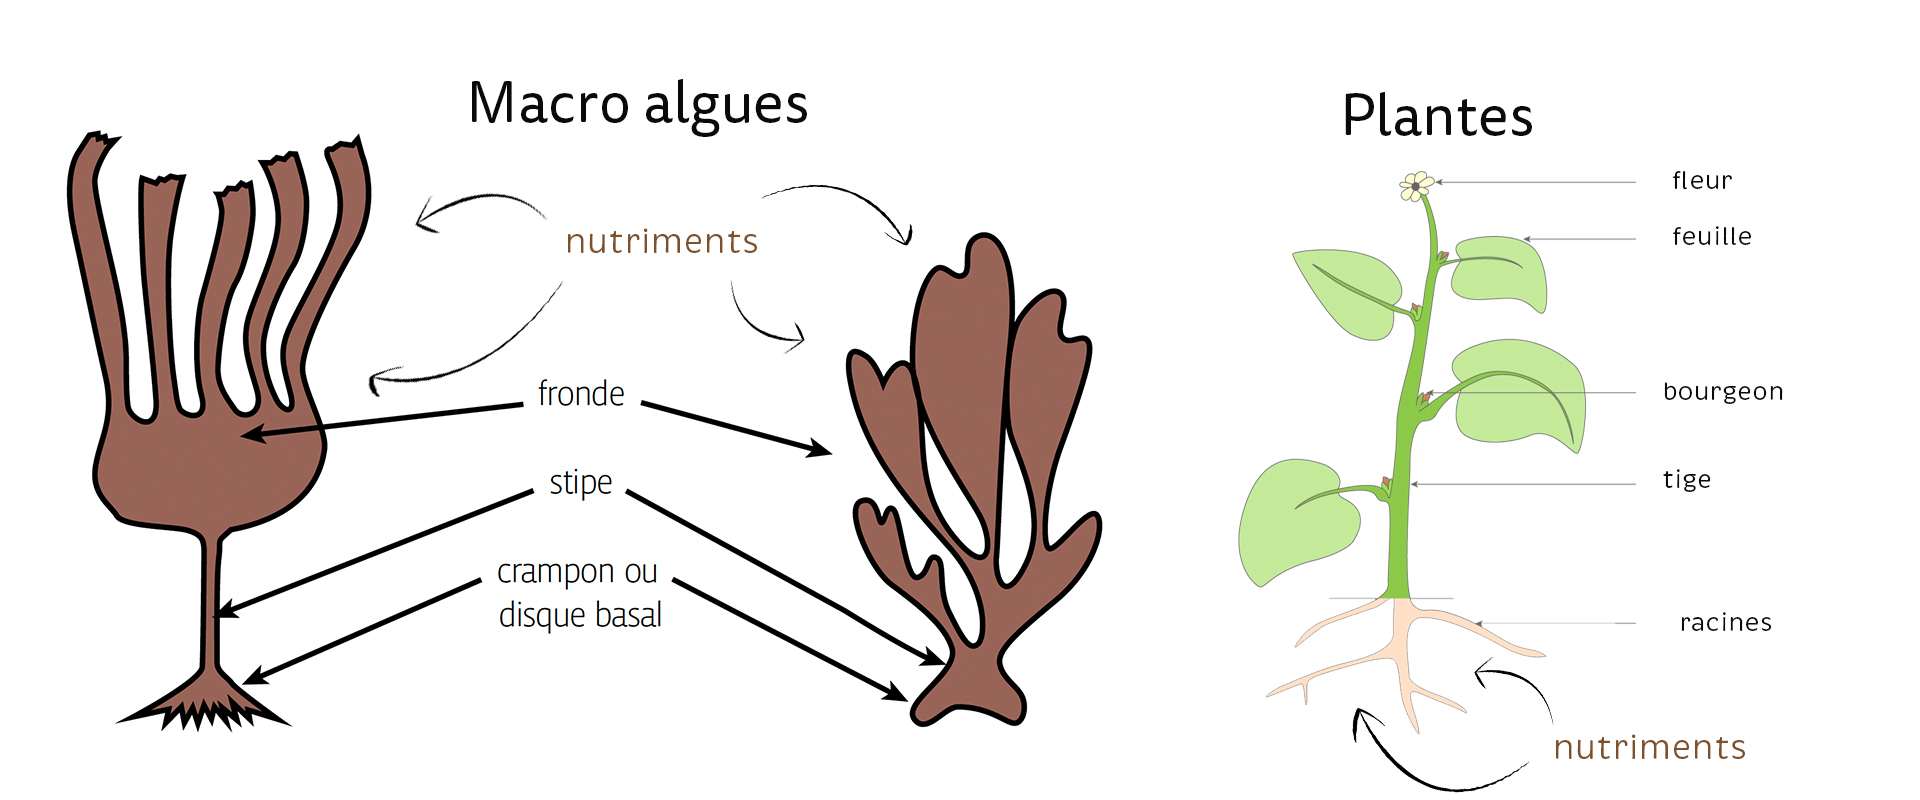 C'est quoi une algue ? 5 choses à savoir sur les algues alimentaires -  Recettes de cuisine aux algues alimentaires bio de Bretagne - Bord à Bord